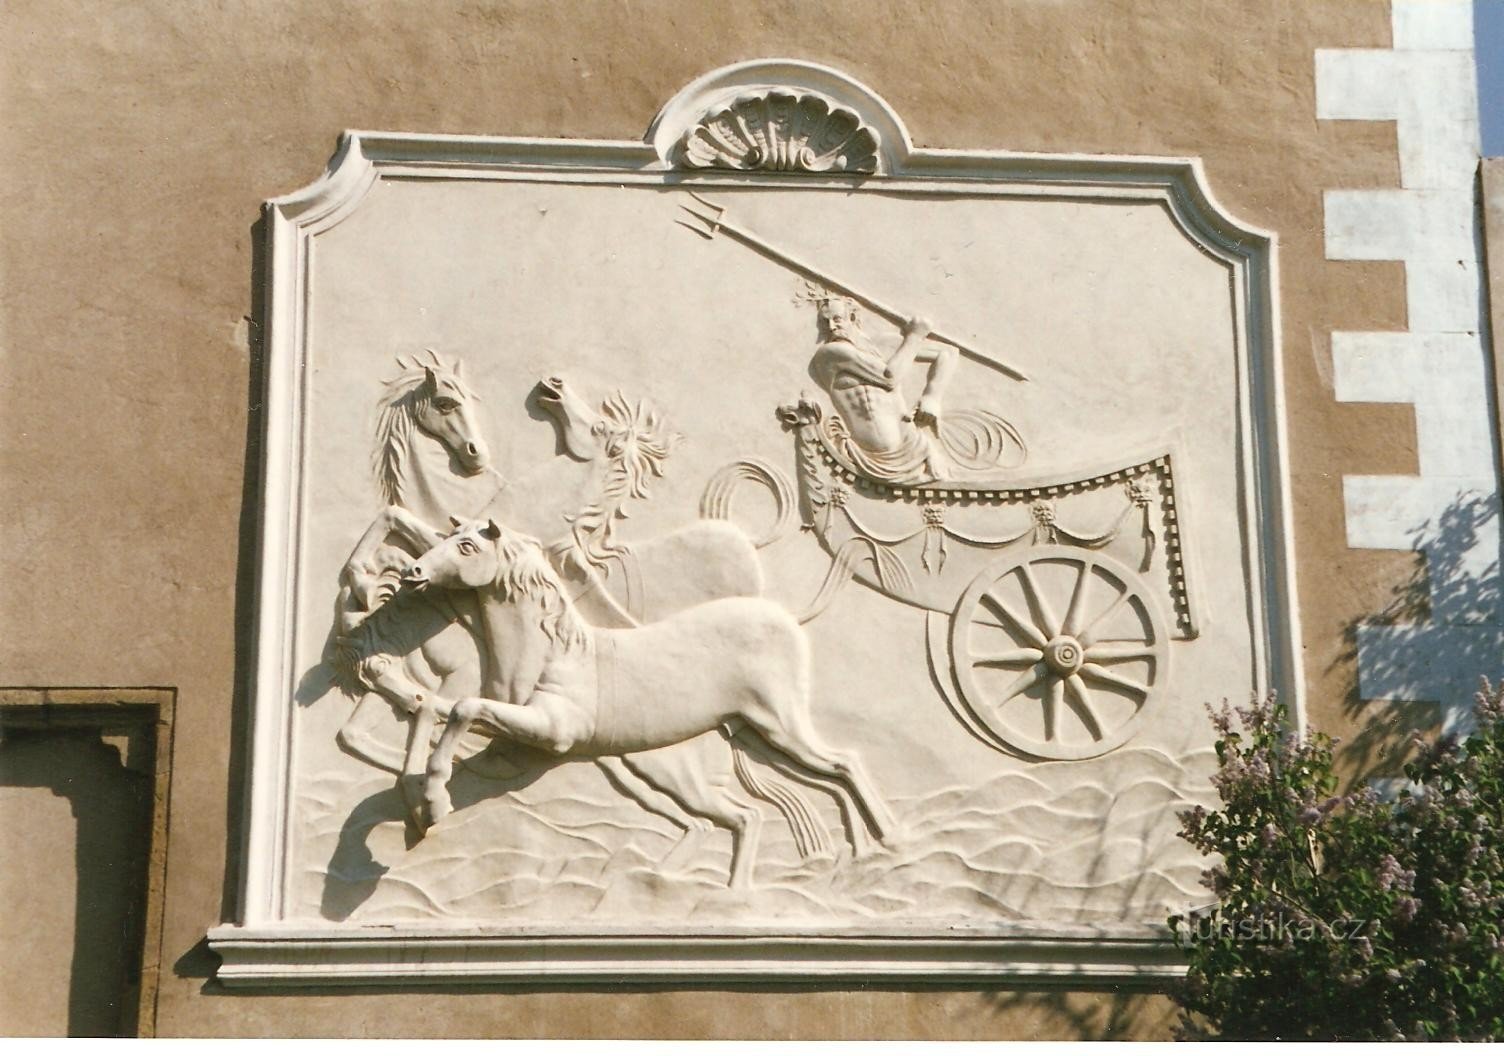 Telč - jardim do castelo - relevo de Netuno com um quadriciclo